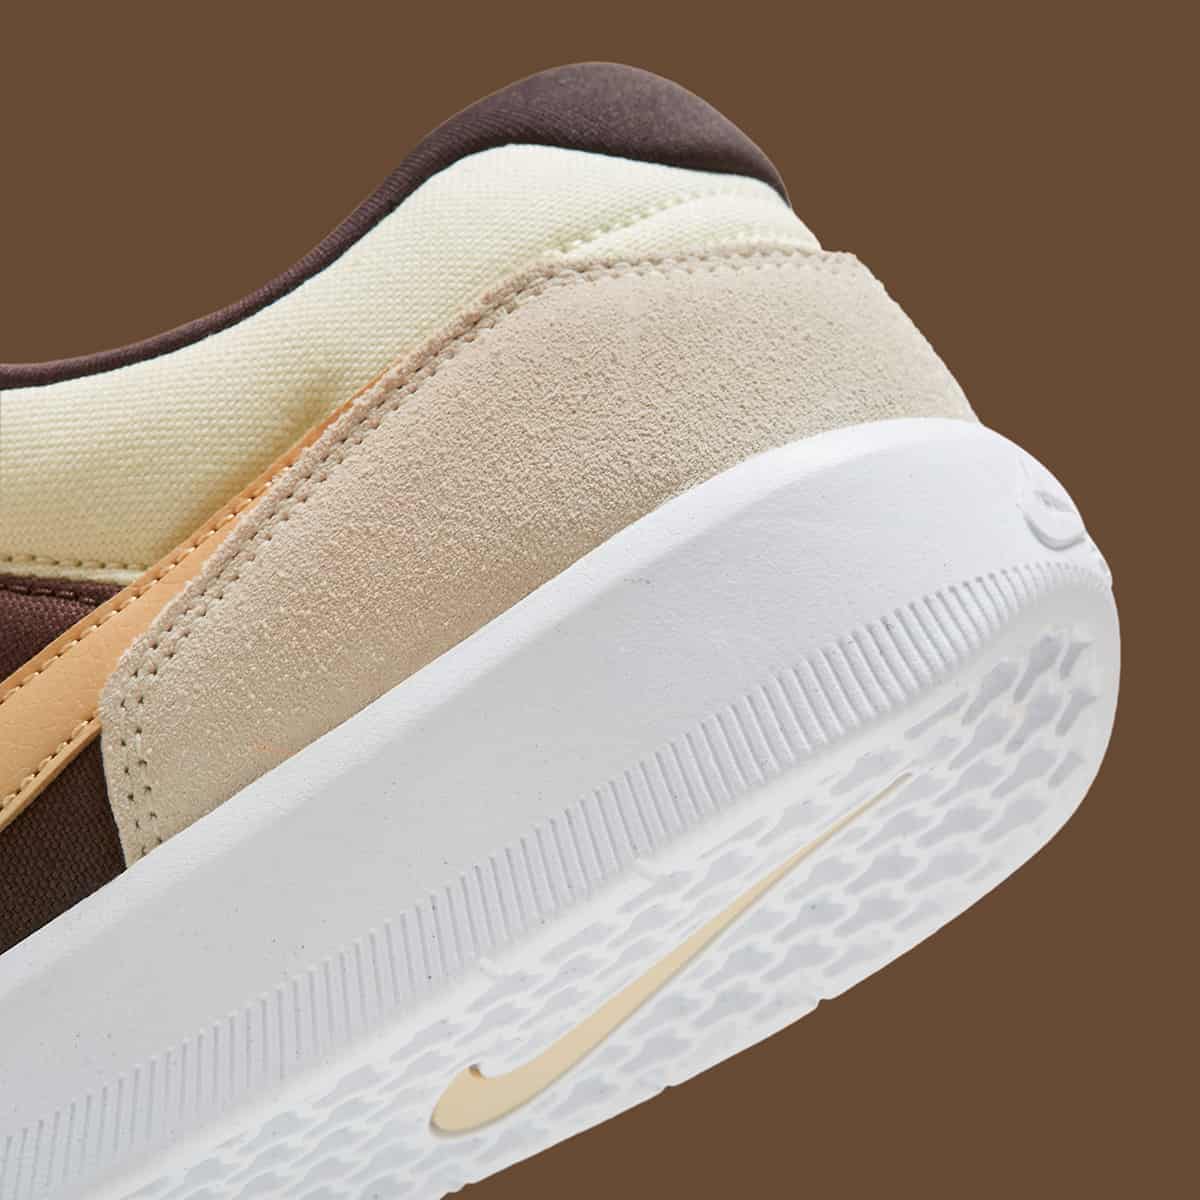 The Nike SB Force 58 “Reverse Mocha” Is Travis Scott-inspired